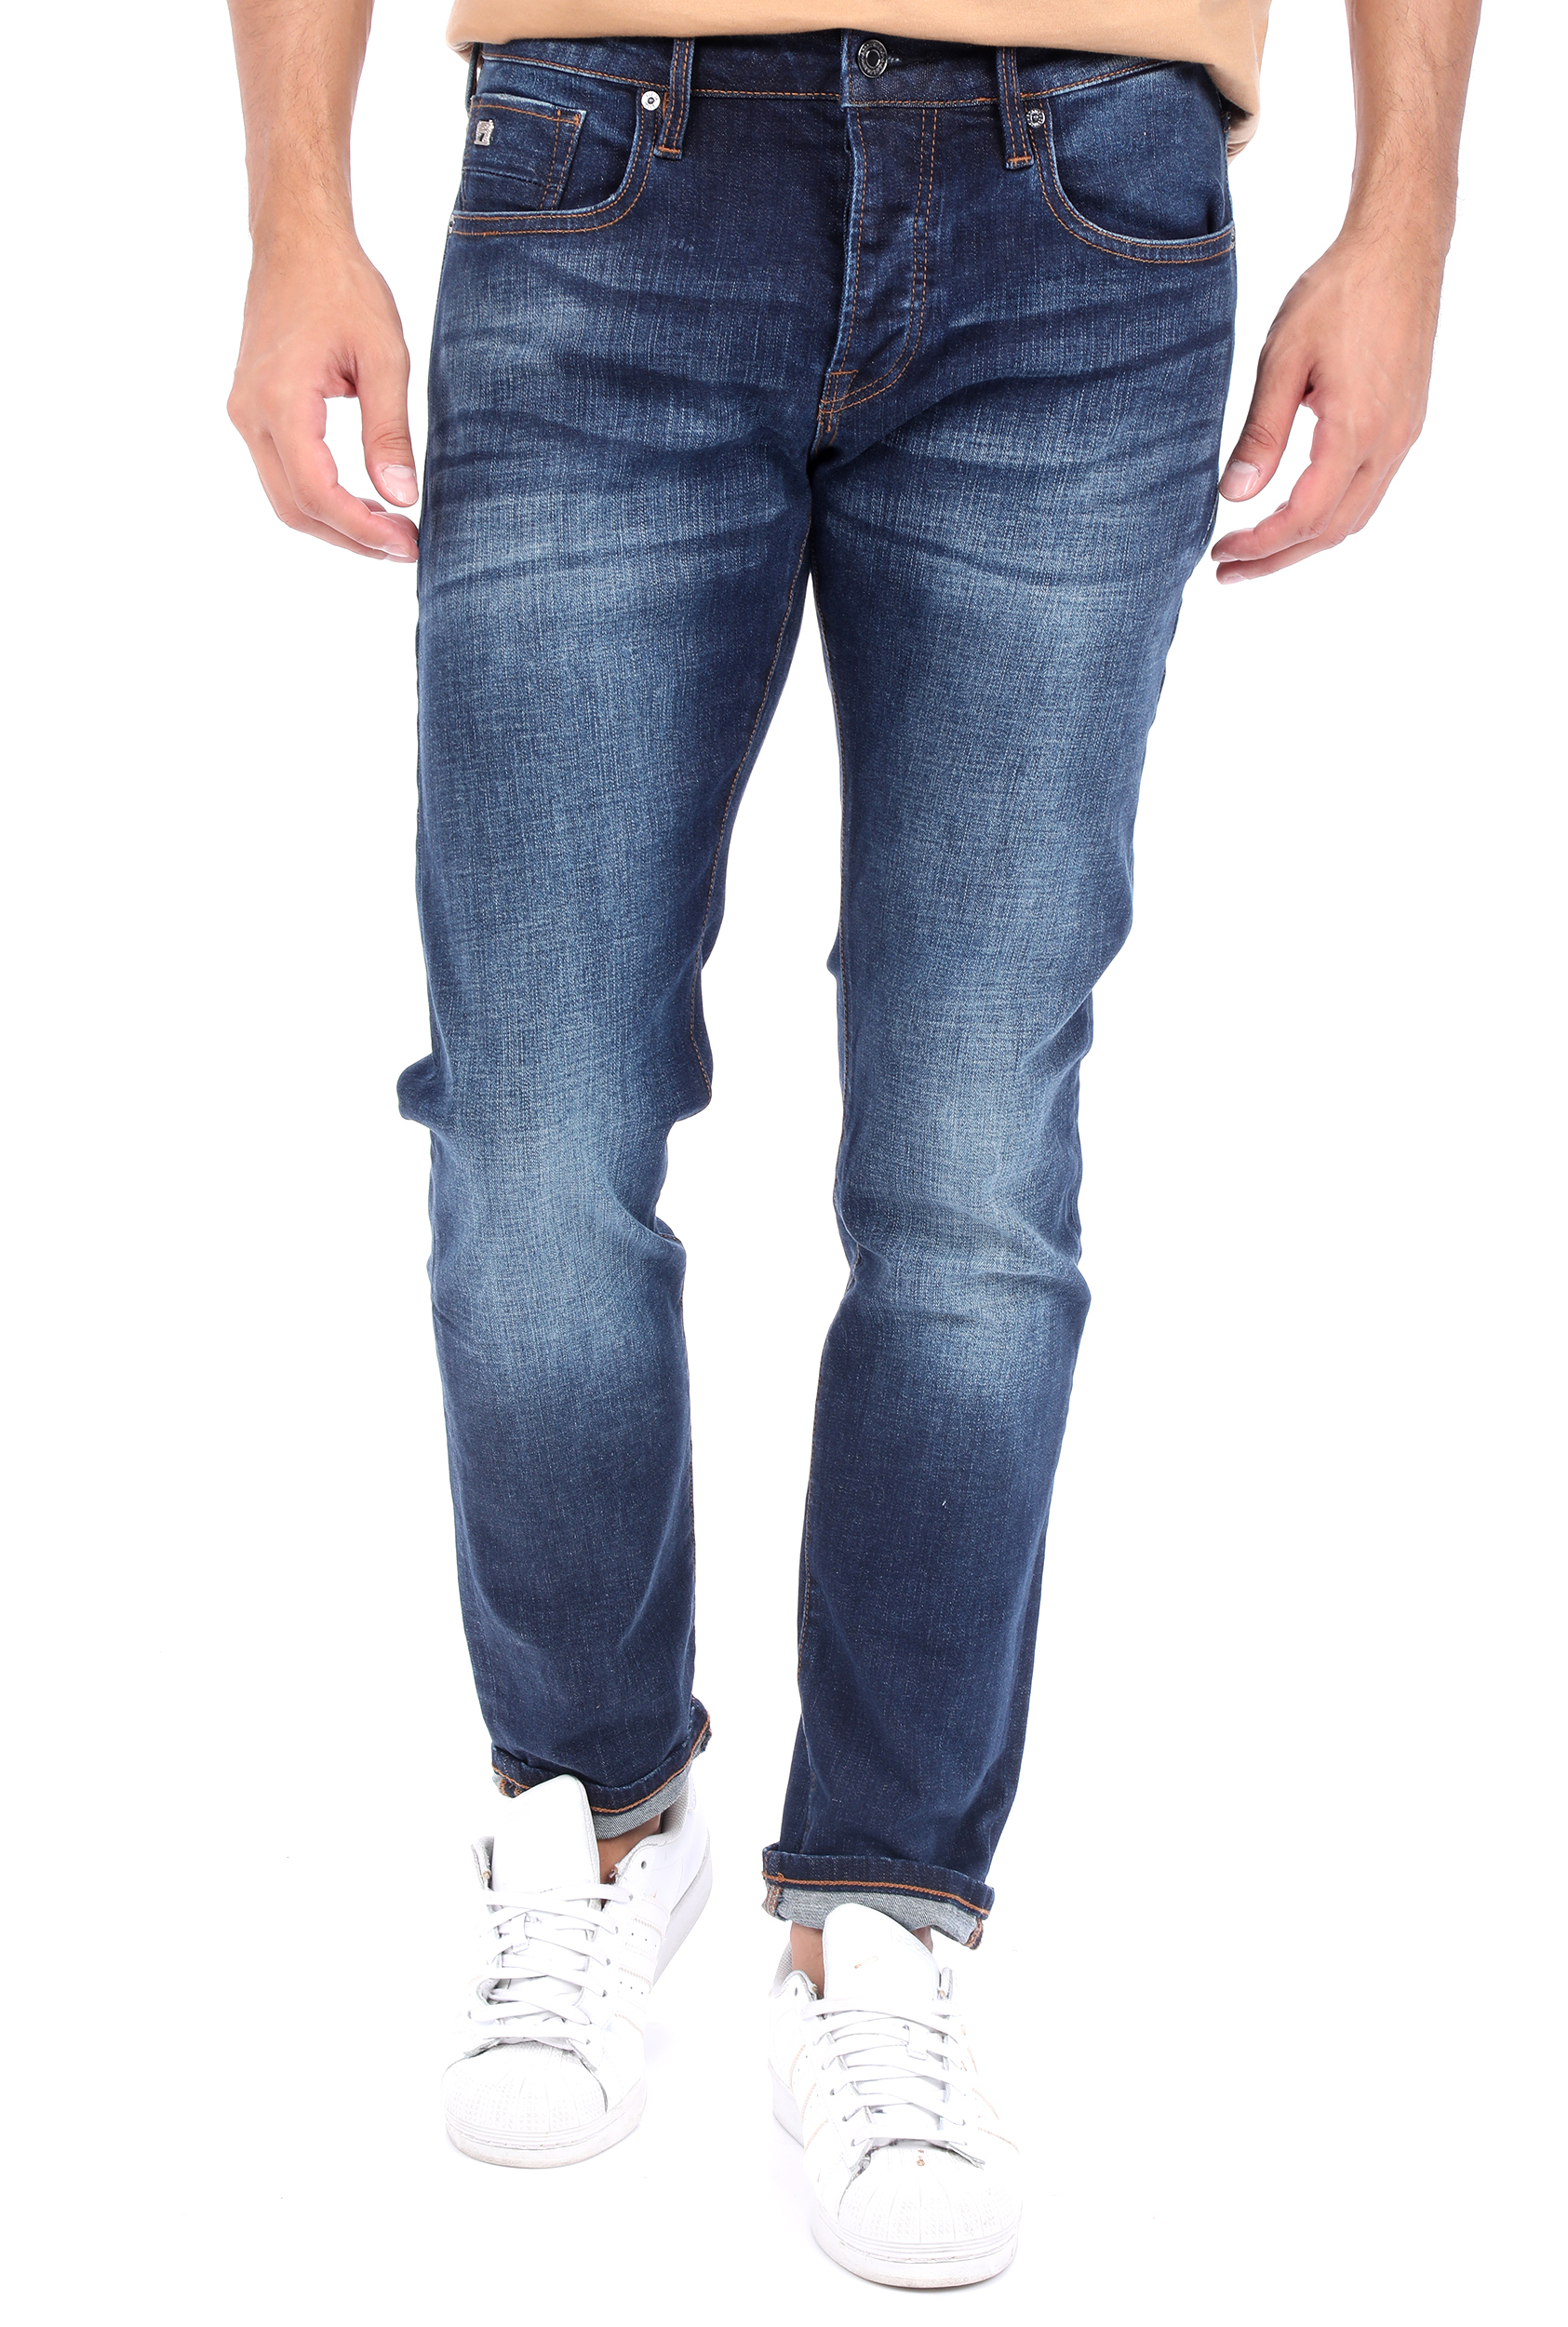 Ανδρικά/Ρούχα/Τζίν/Skinny SCOTCH & SODA - Ανδρικό jean παντελόνι SCOTCH & SODA Ralston - Blizzard Blue μπλε